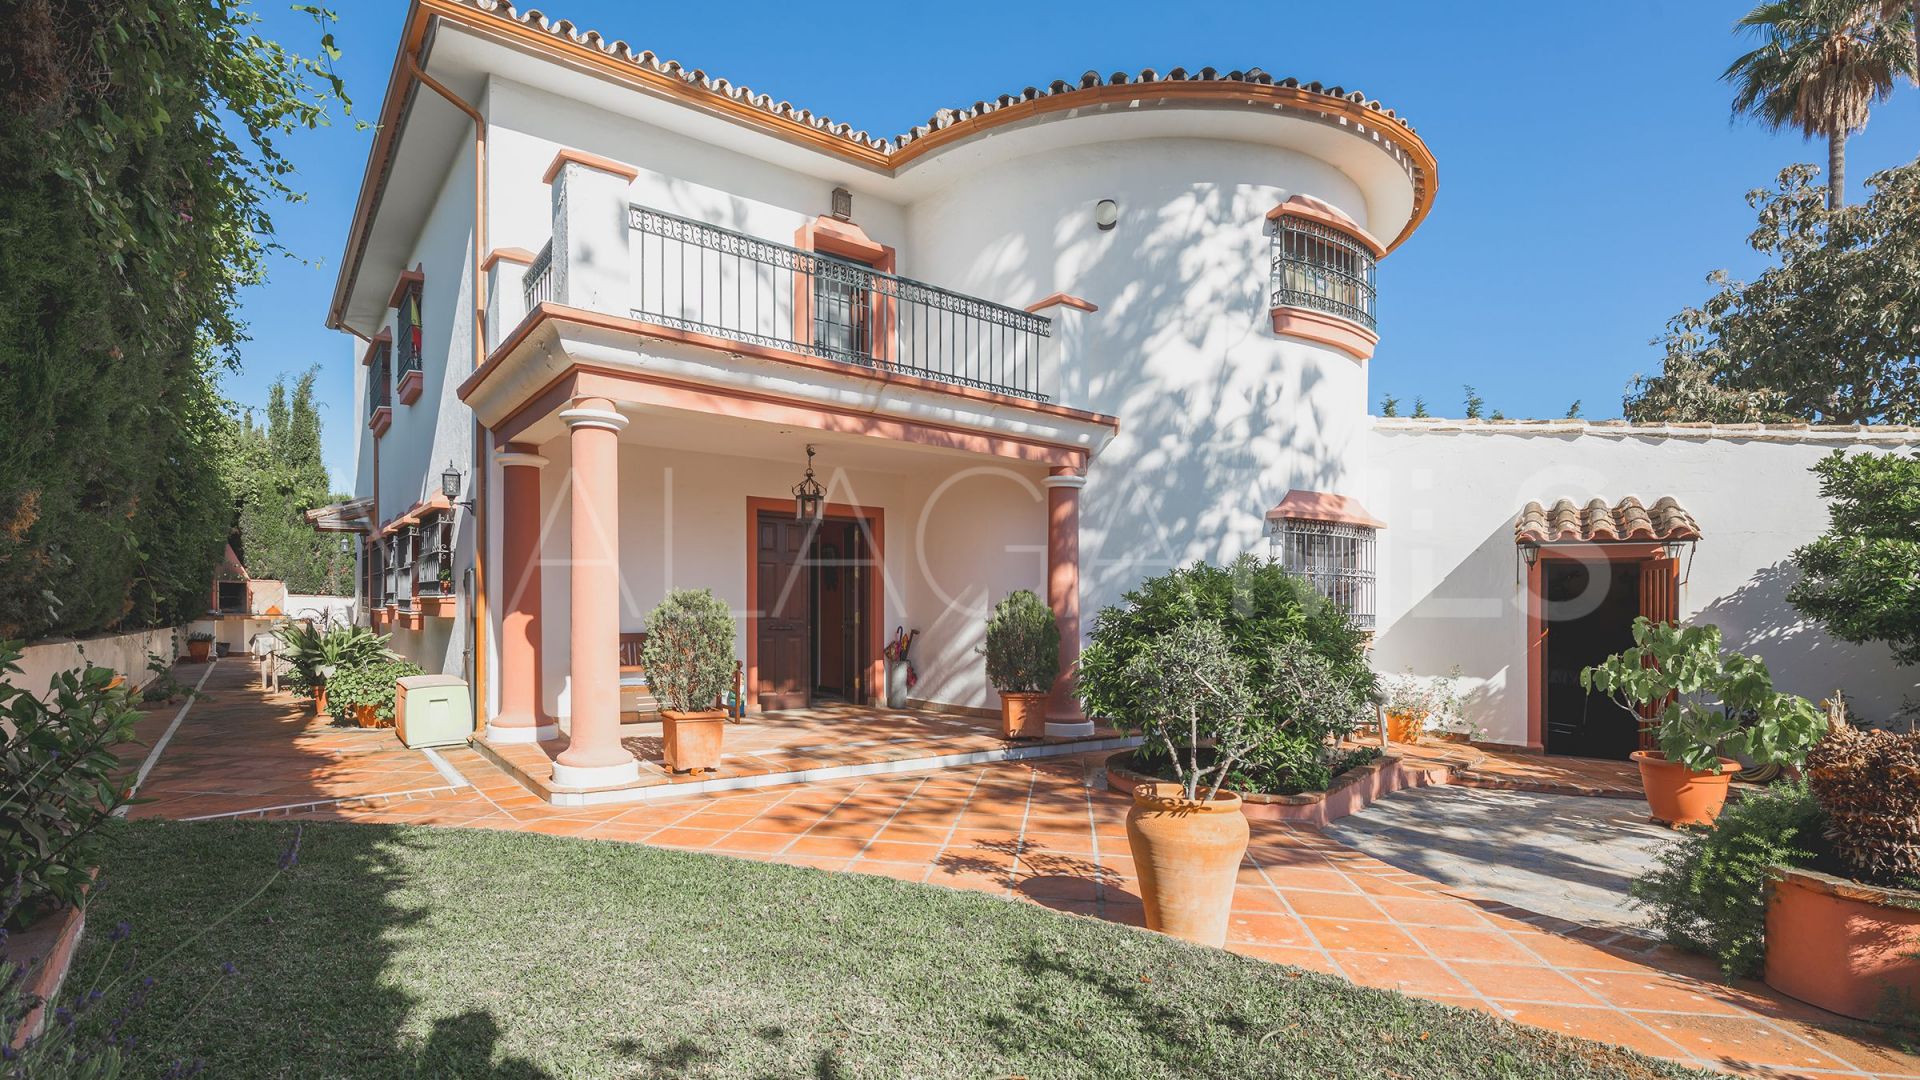 8 bedrooms villa in Valdeolletas for sale